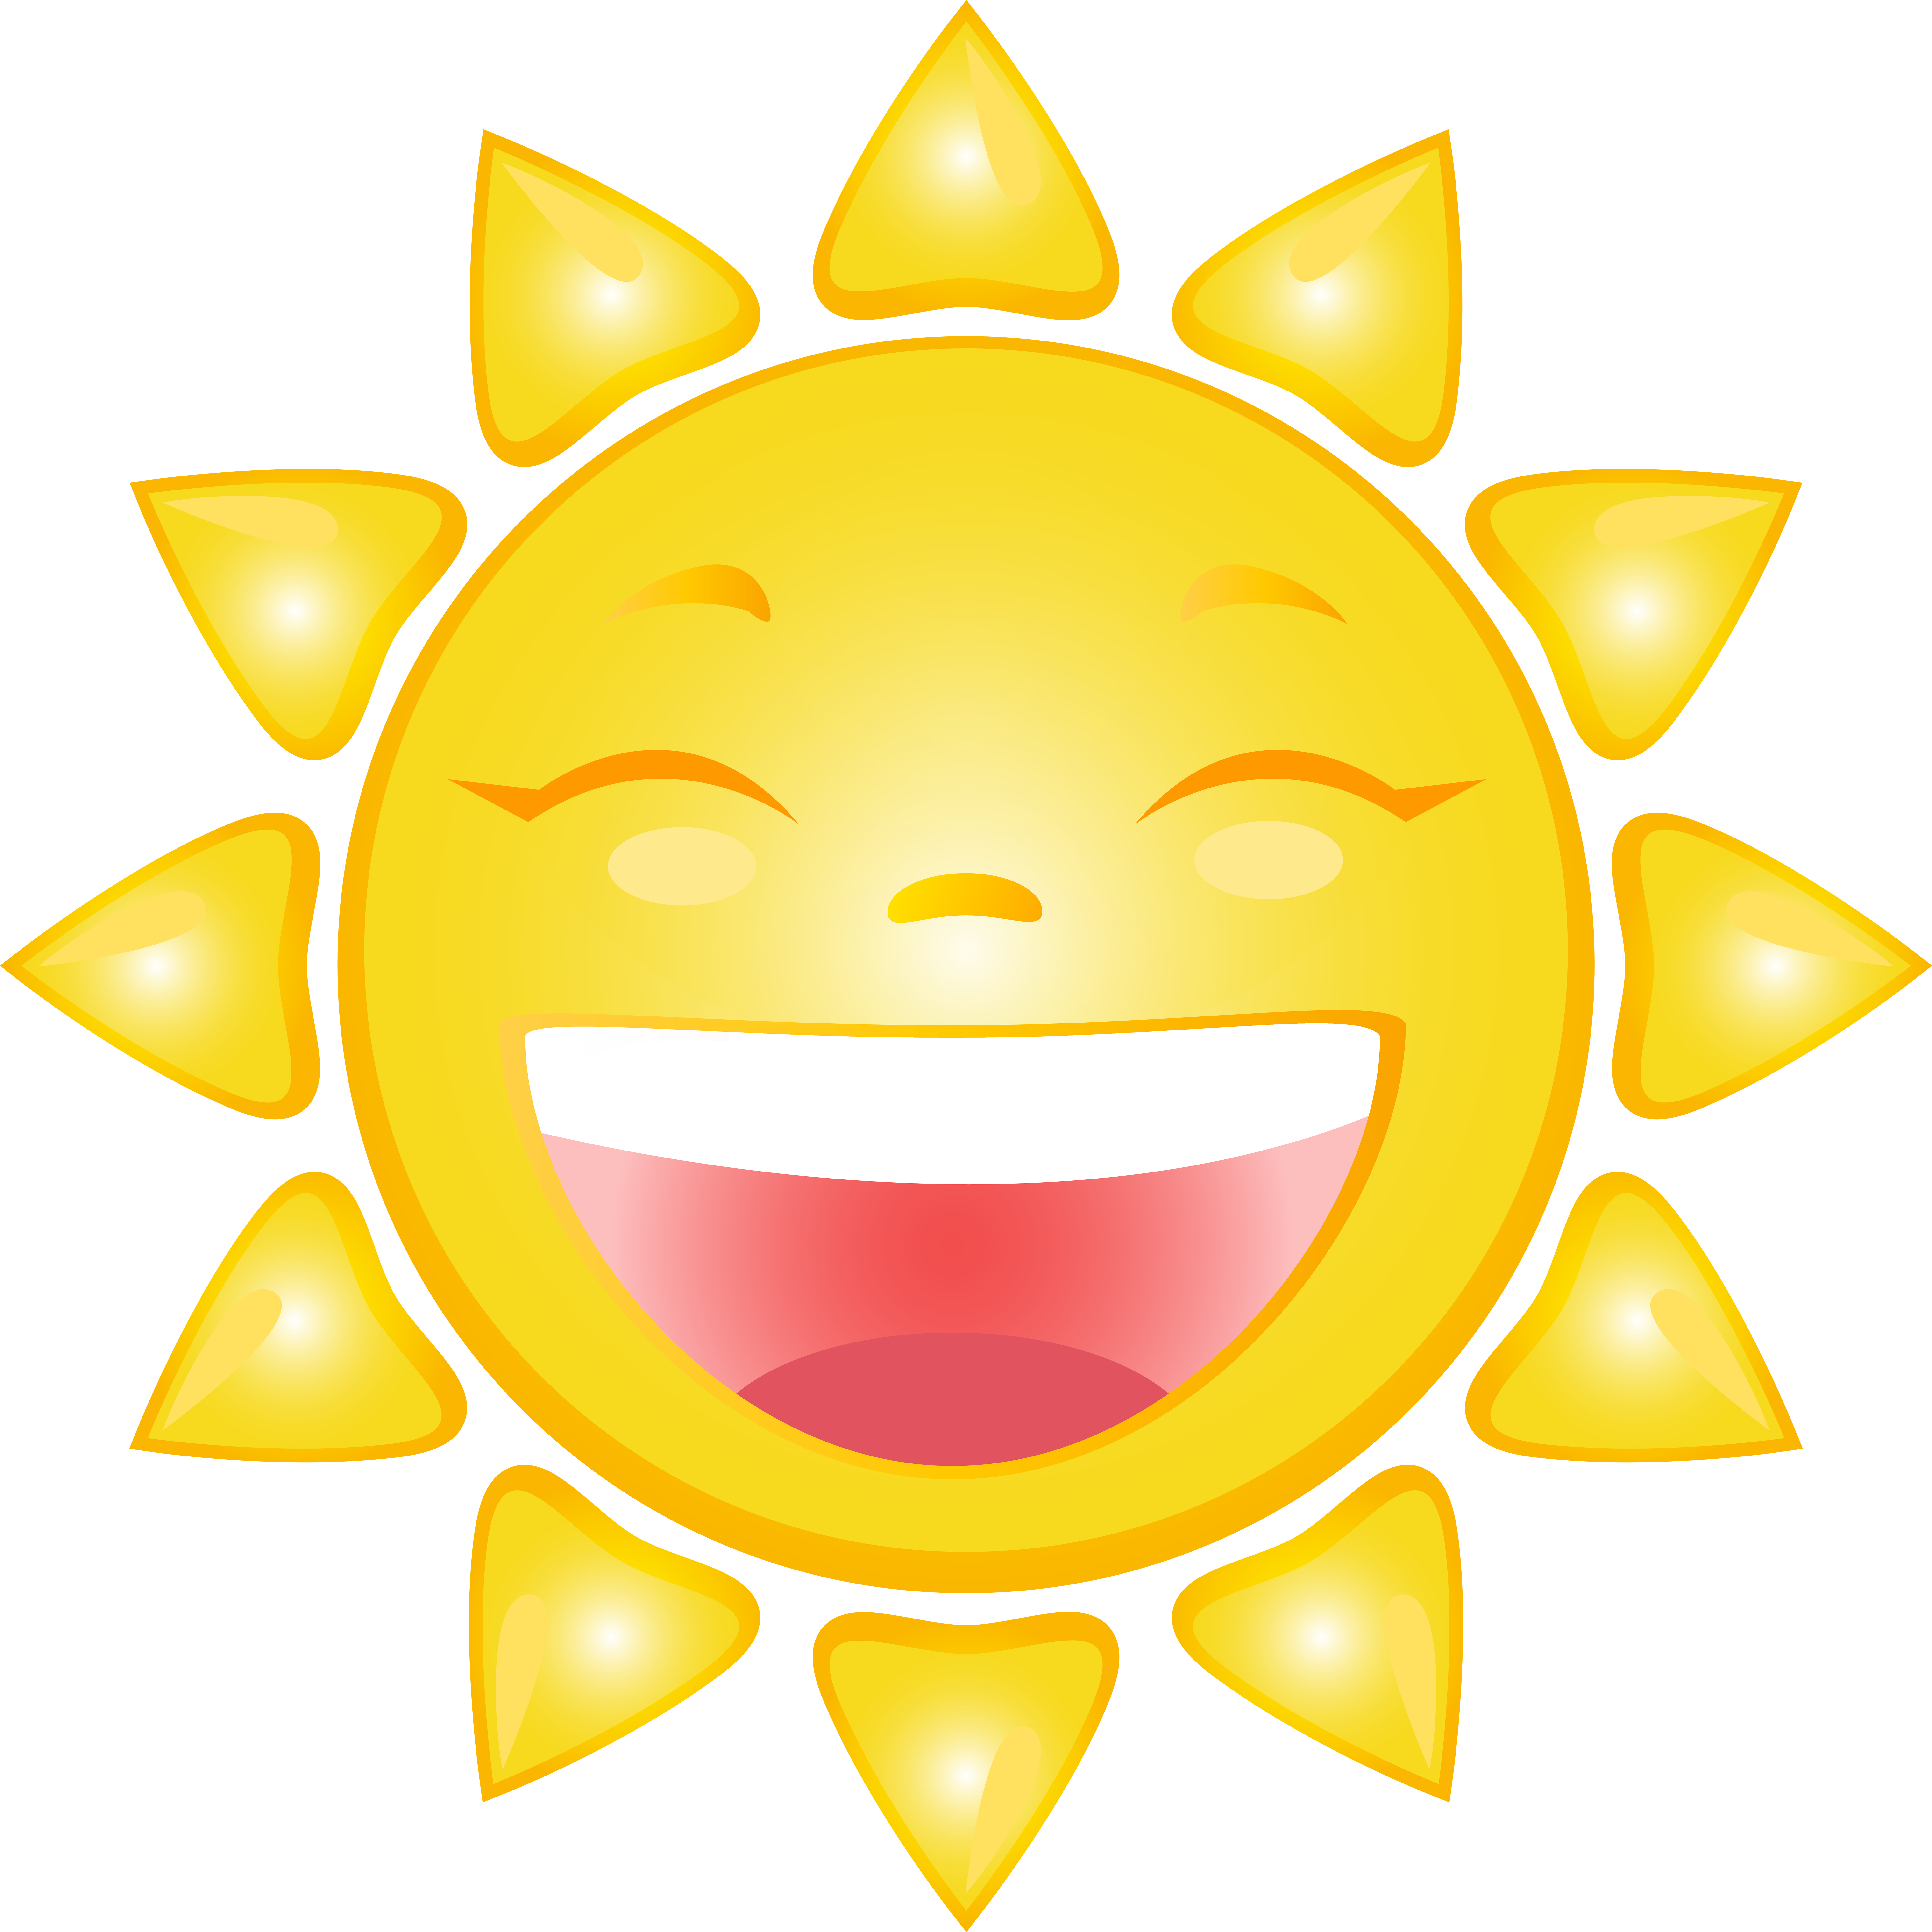 Cartoon Smiling Sun Clipart Best